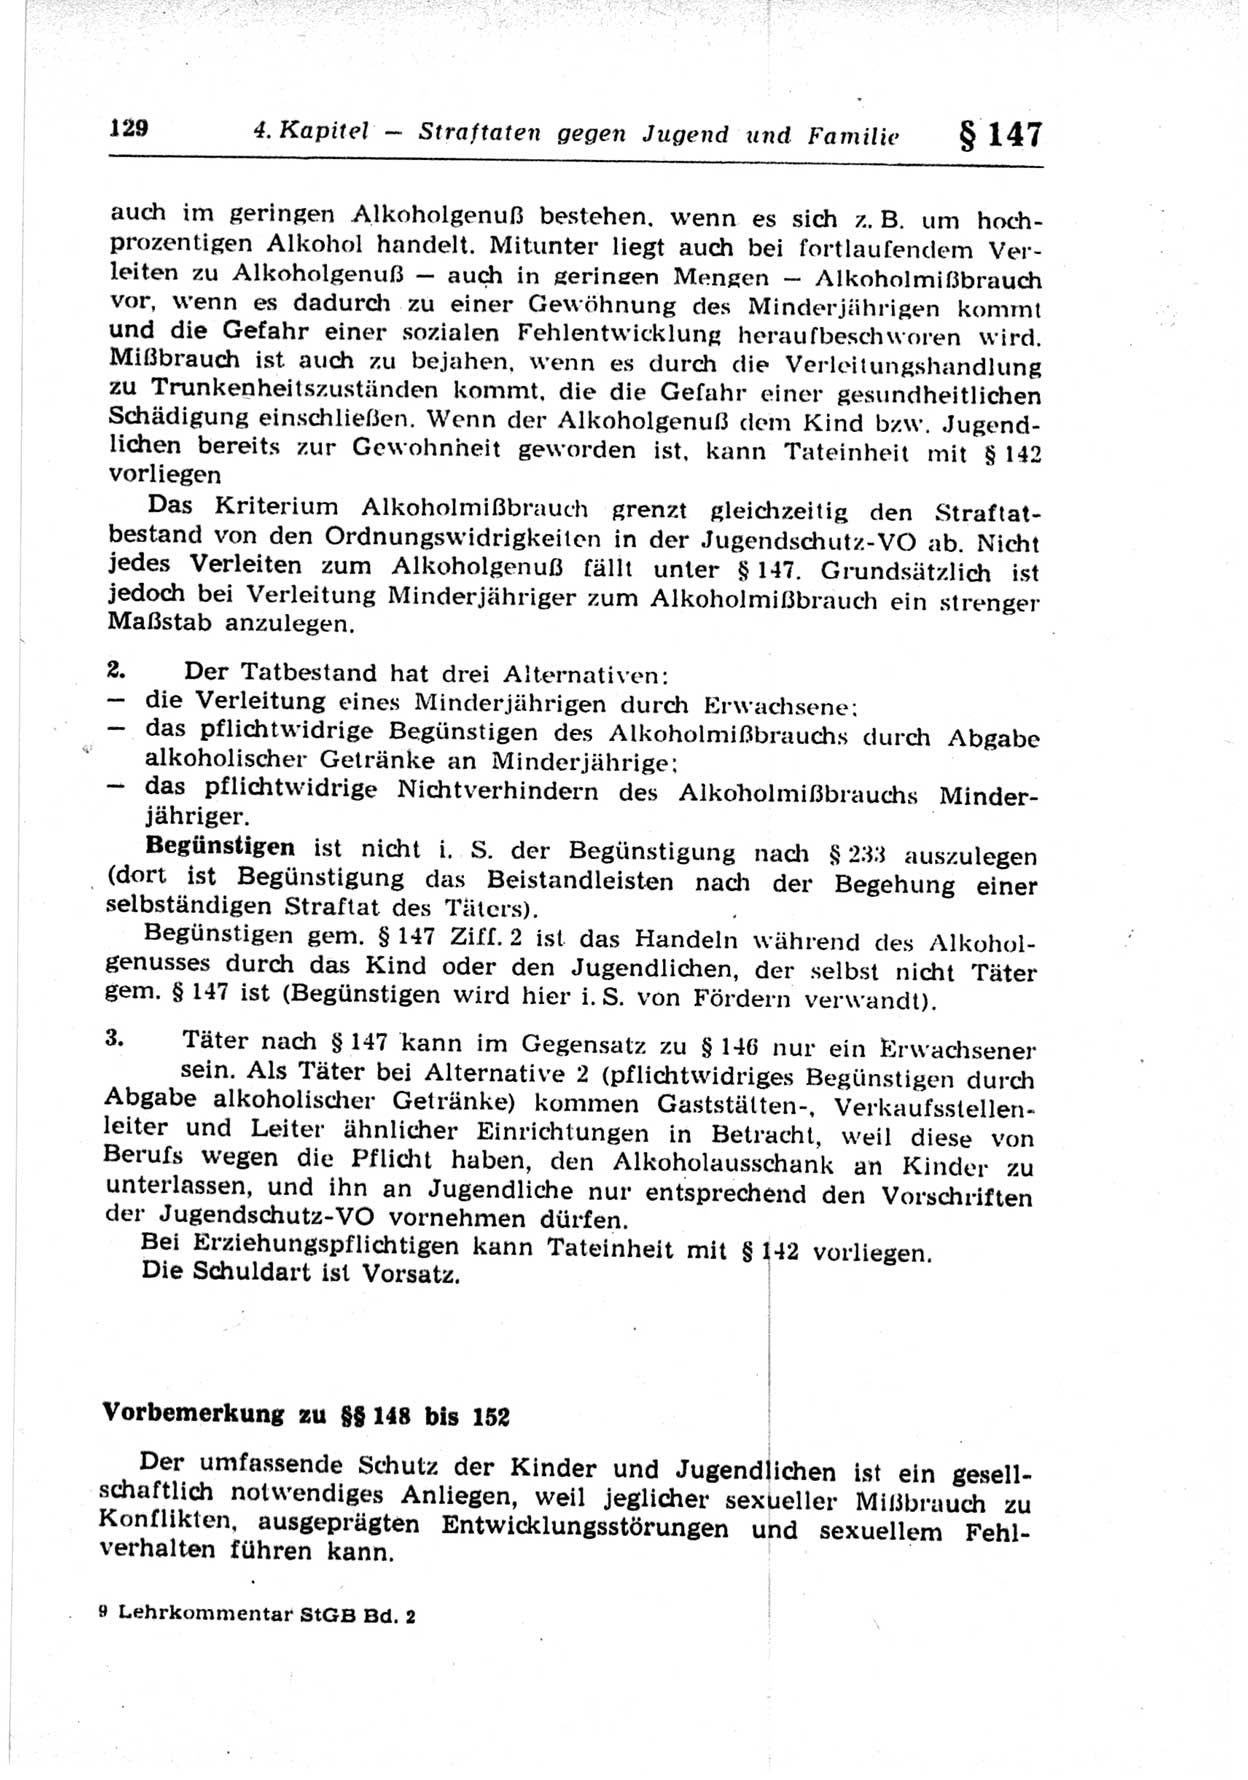 Strafrecht der Deutschen Demokratischen Republik (DDR), Lehrkommentar zum Strafgesetzbuch (StGB), Besonderer Teil 1969, Seite 129 (Strafr. DDR Lehrkomm. StGB BT 1969, S. 129)